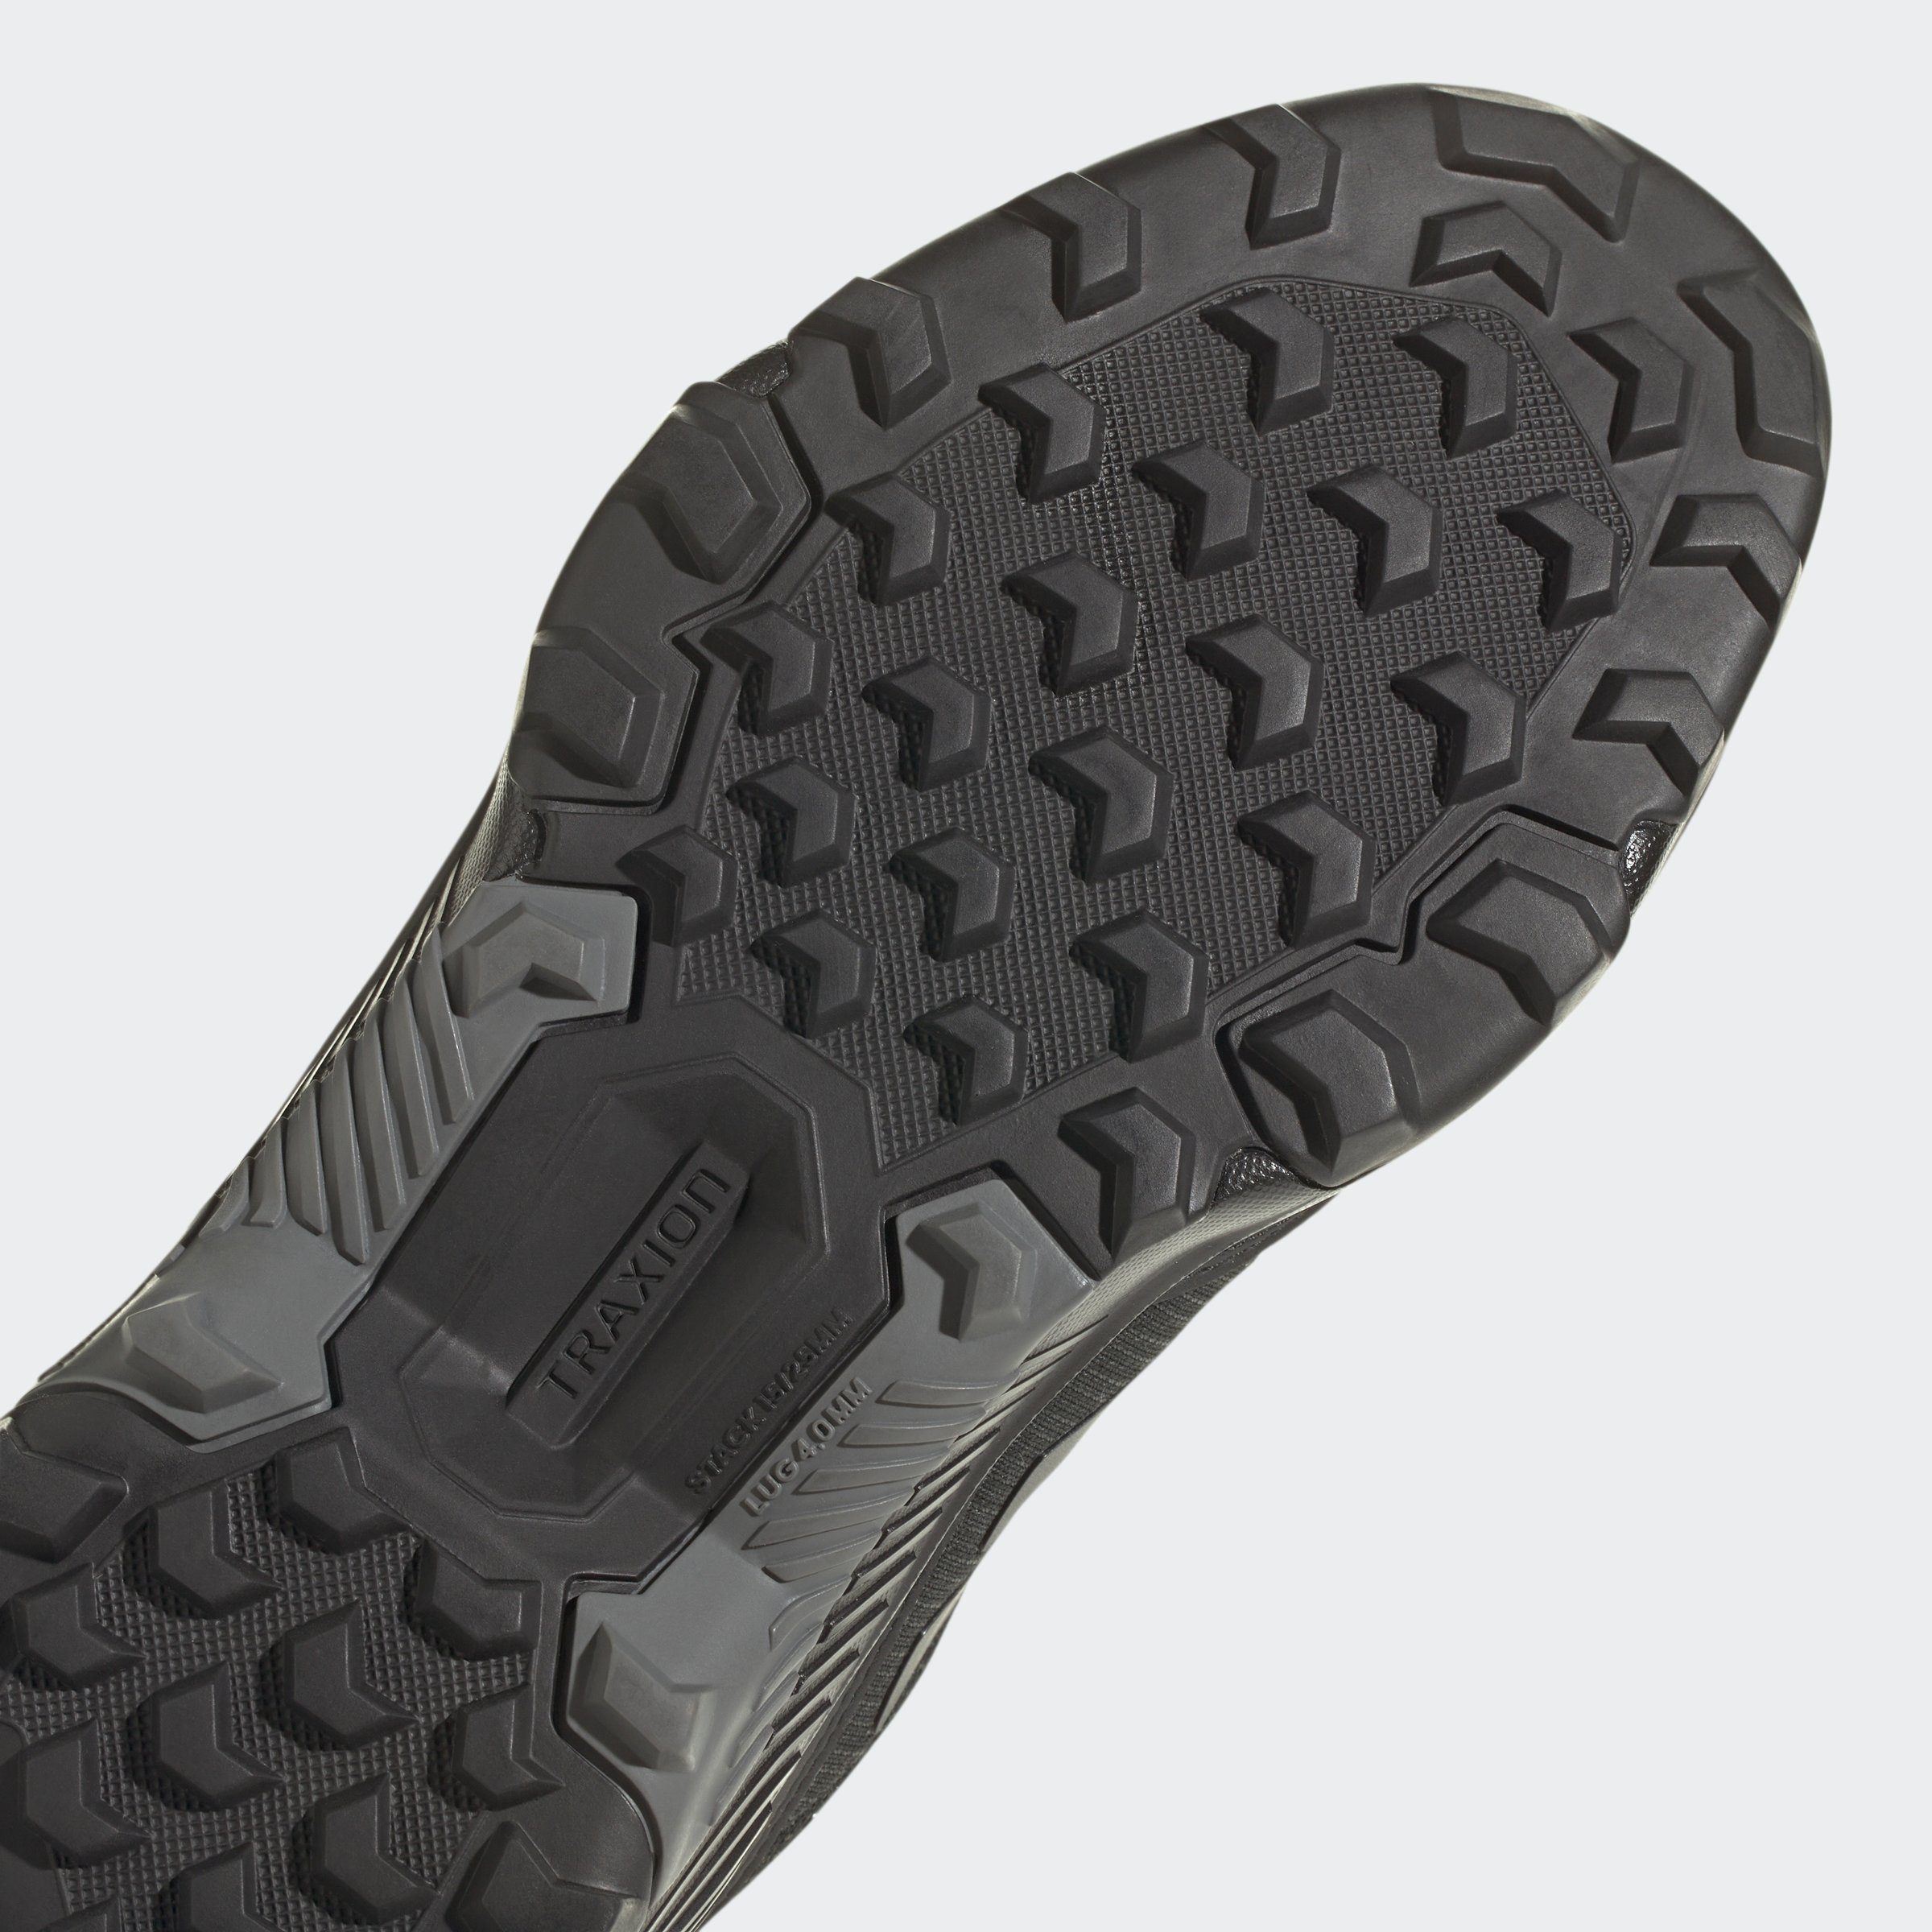 TERREX / Carbon Black EASTRAIL Core Grey Four 2.0 adidas Wanderschuh wasserdicht / RAIN.RDY